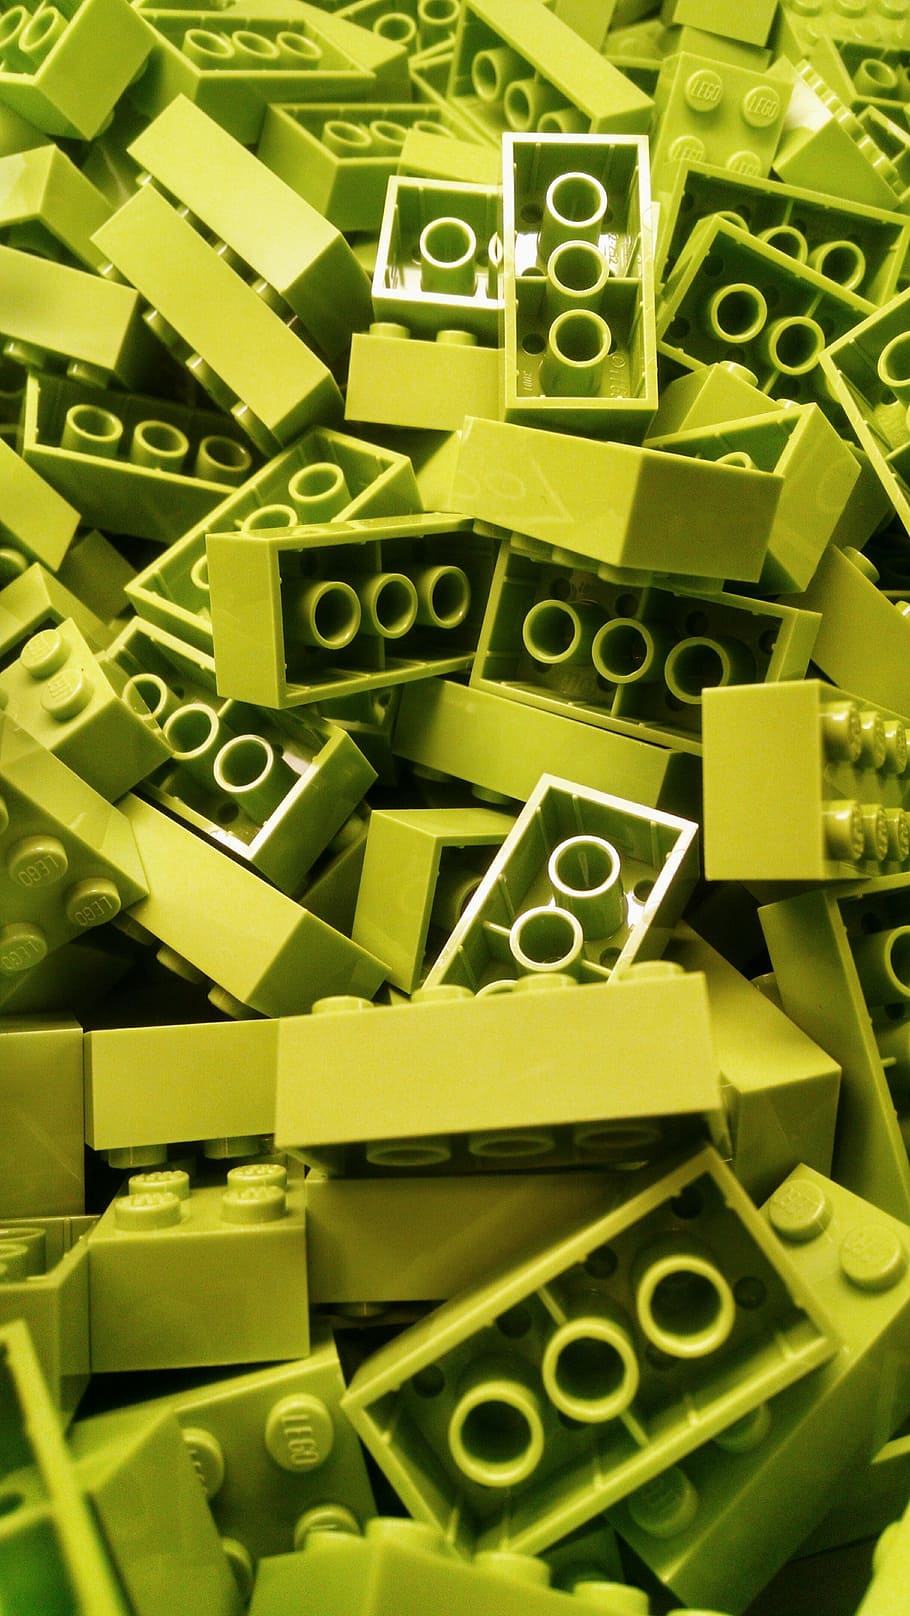 verde, lote de bloques de construcción, lego, bloque de construcción, bloques, colorido, color, ladrillo, diversión, juguete